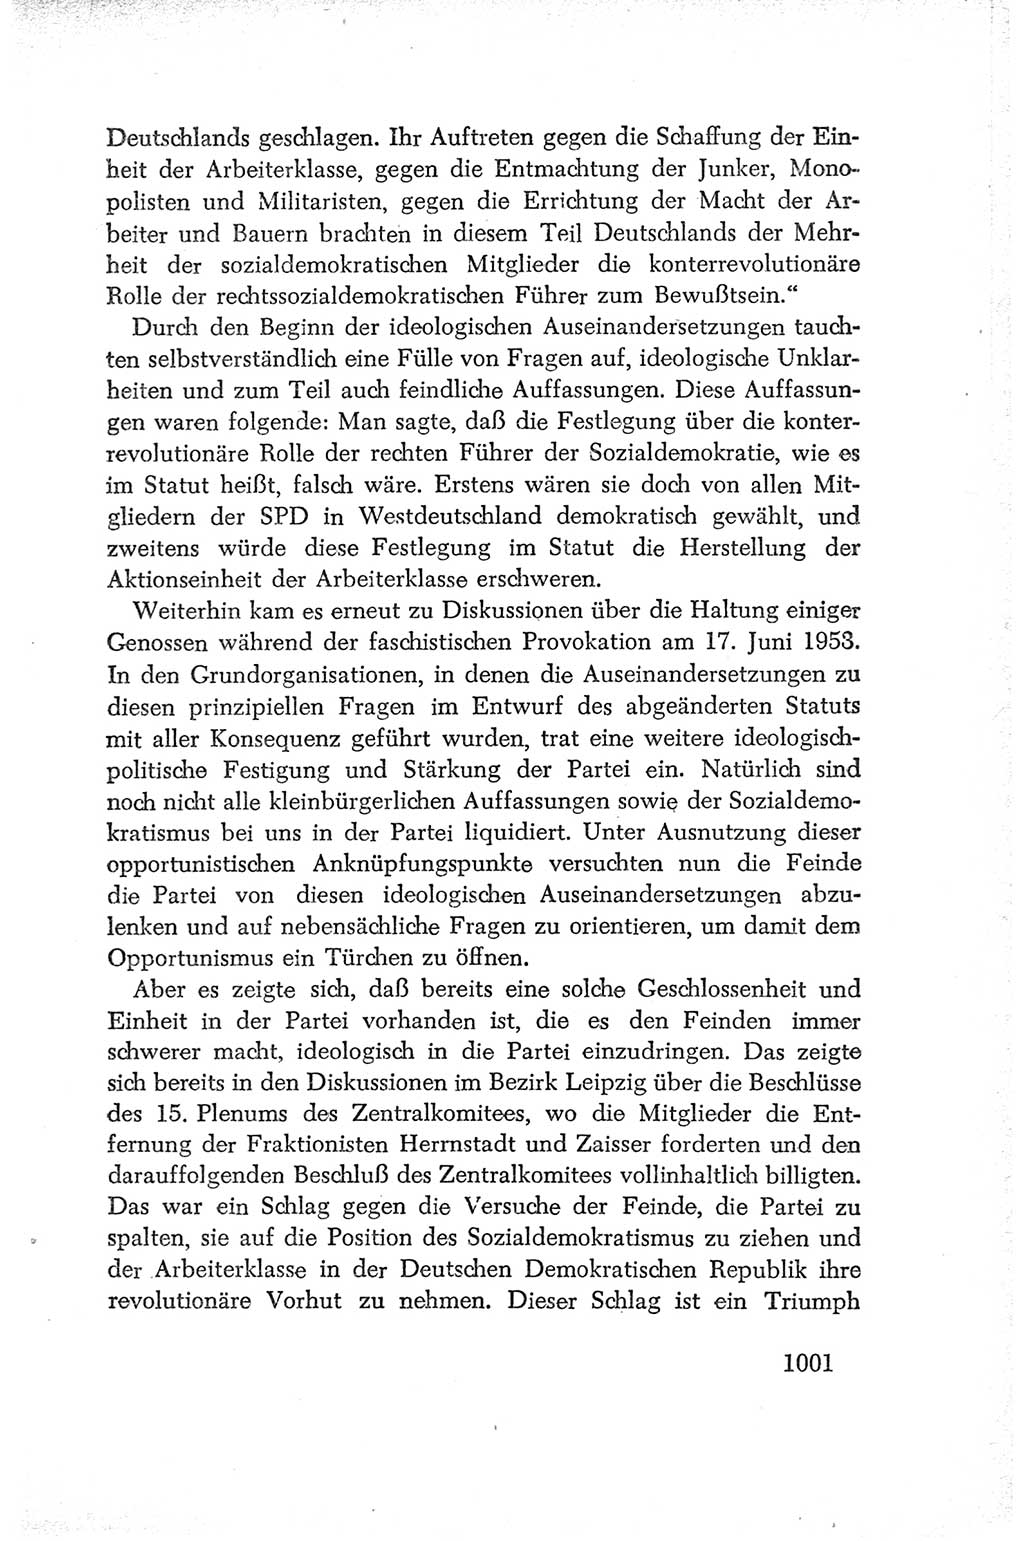 Protokoll der Verhandlungen des Ⅳ. Parteitages der Sozialistischen Einheitspartei Deutschlands (SED) [Deutsche Demokratische Republik (DDR)] 1954, Seite 1001